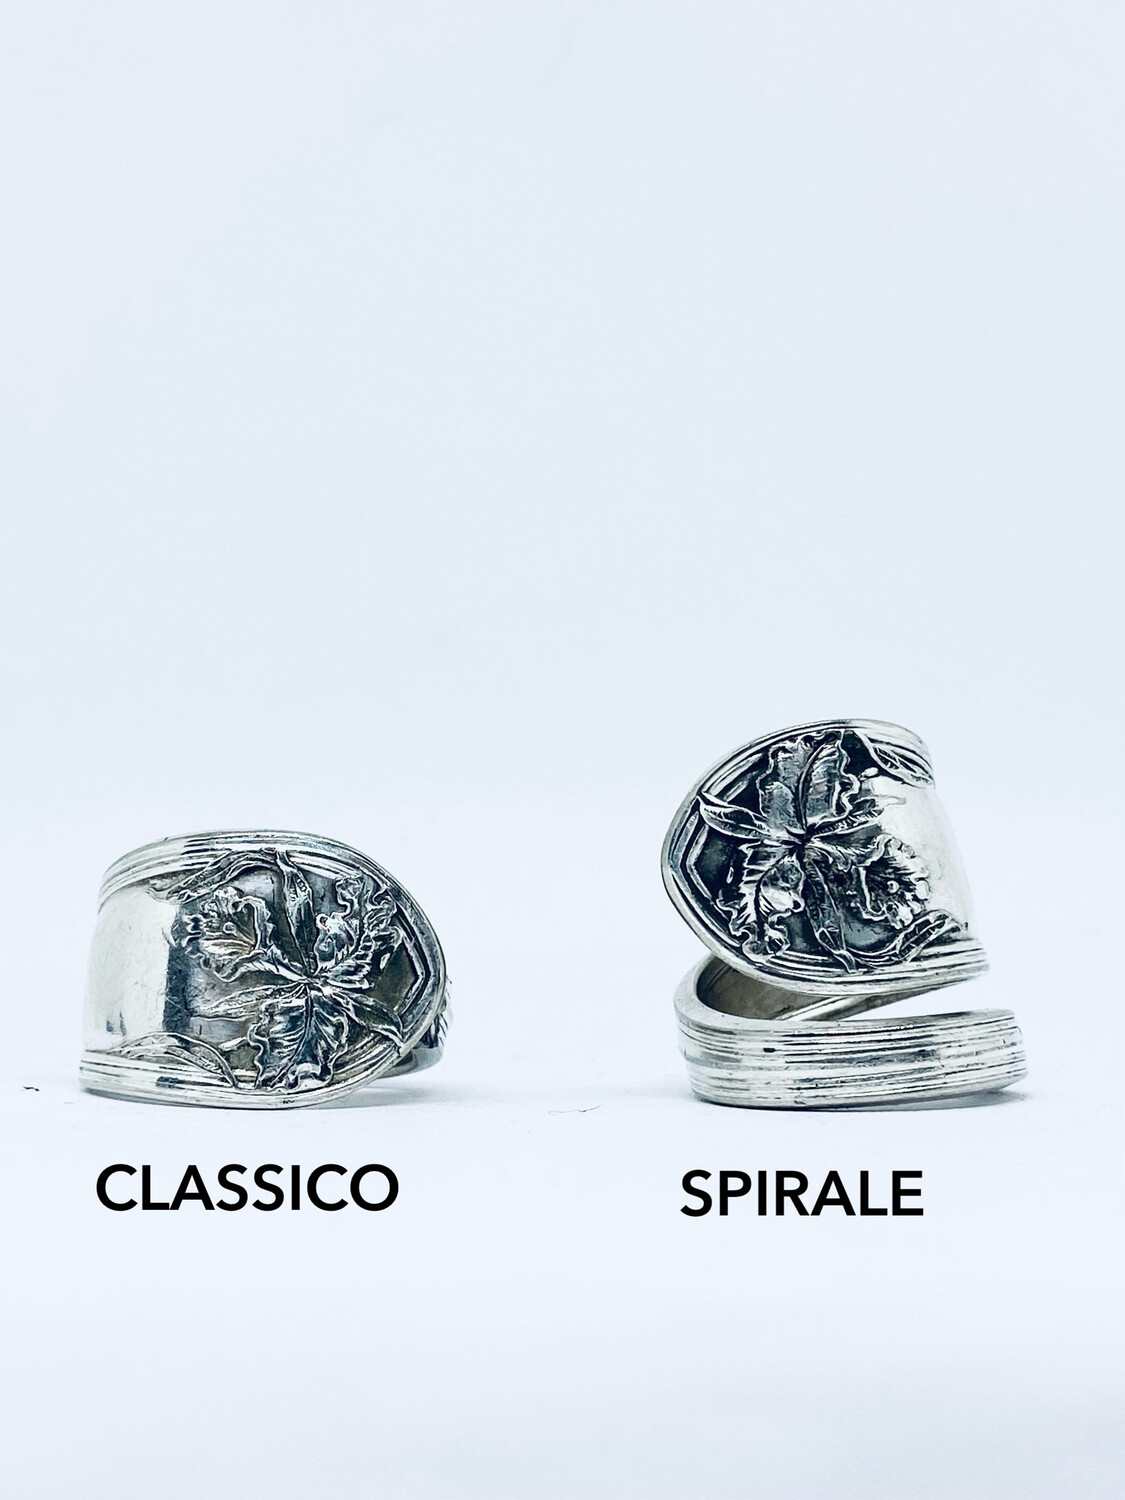 Anello SPIRALE/CLASSICO MANICO CUCCHIAINO FIORE antica posata in argento